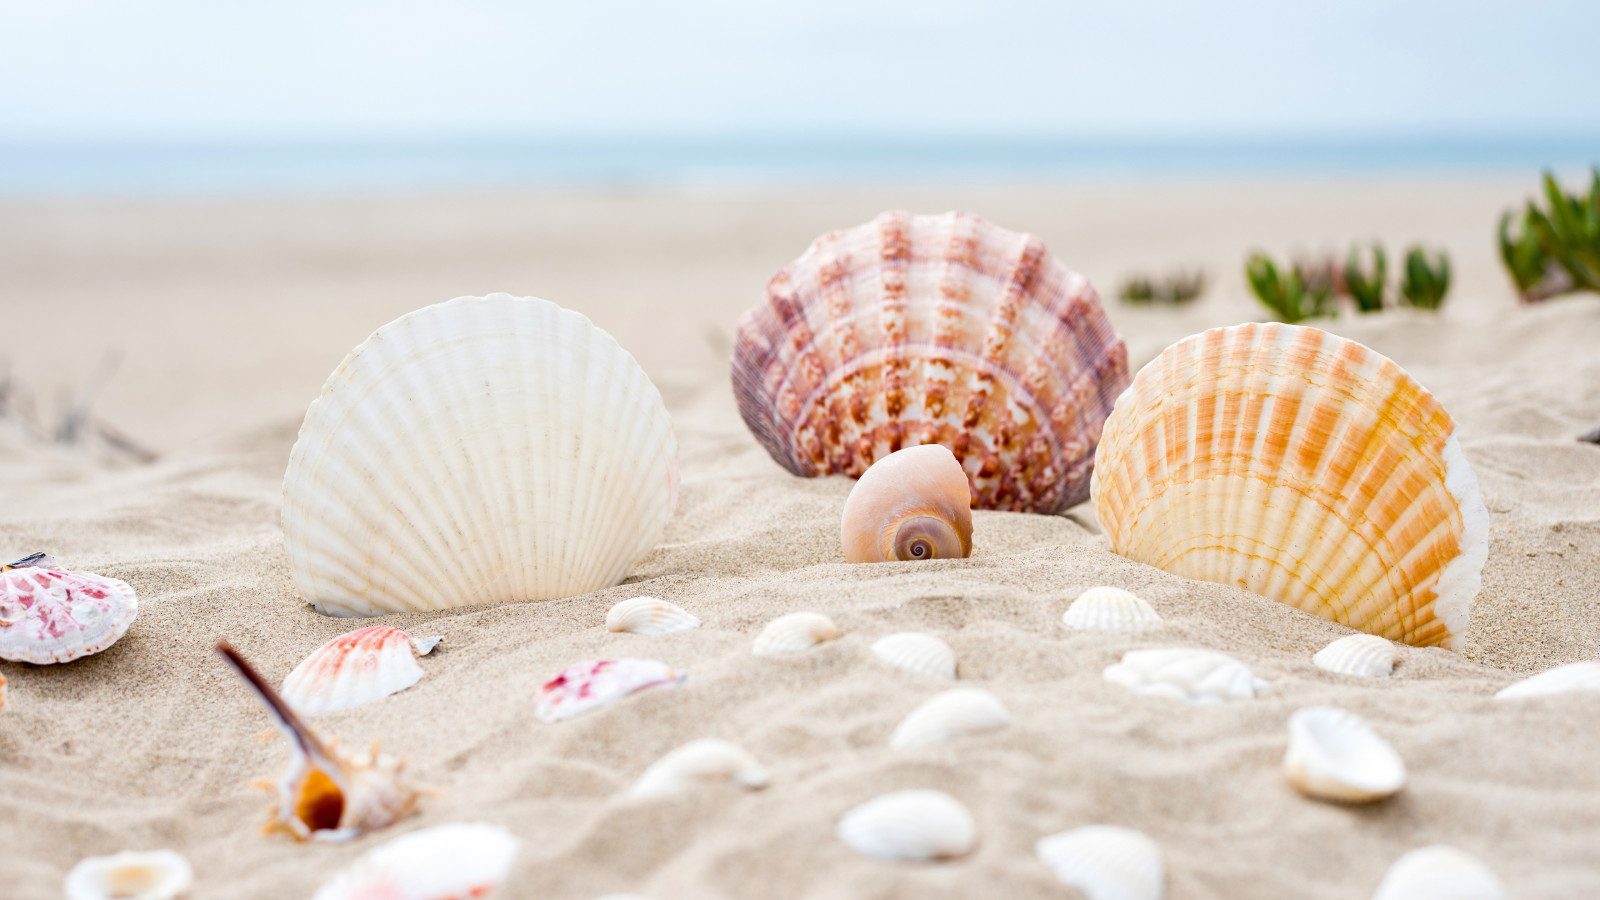 Shells on the ocean beach wallpaper 1600x900